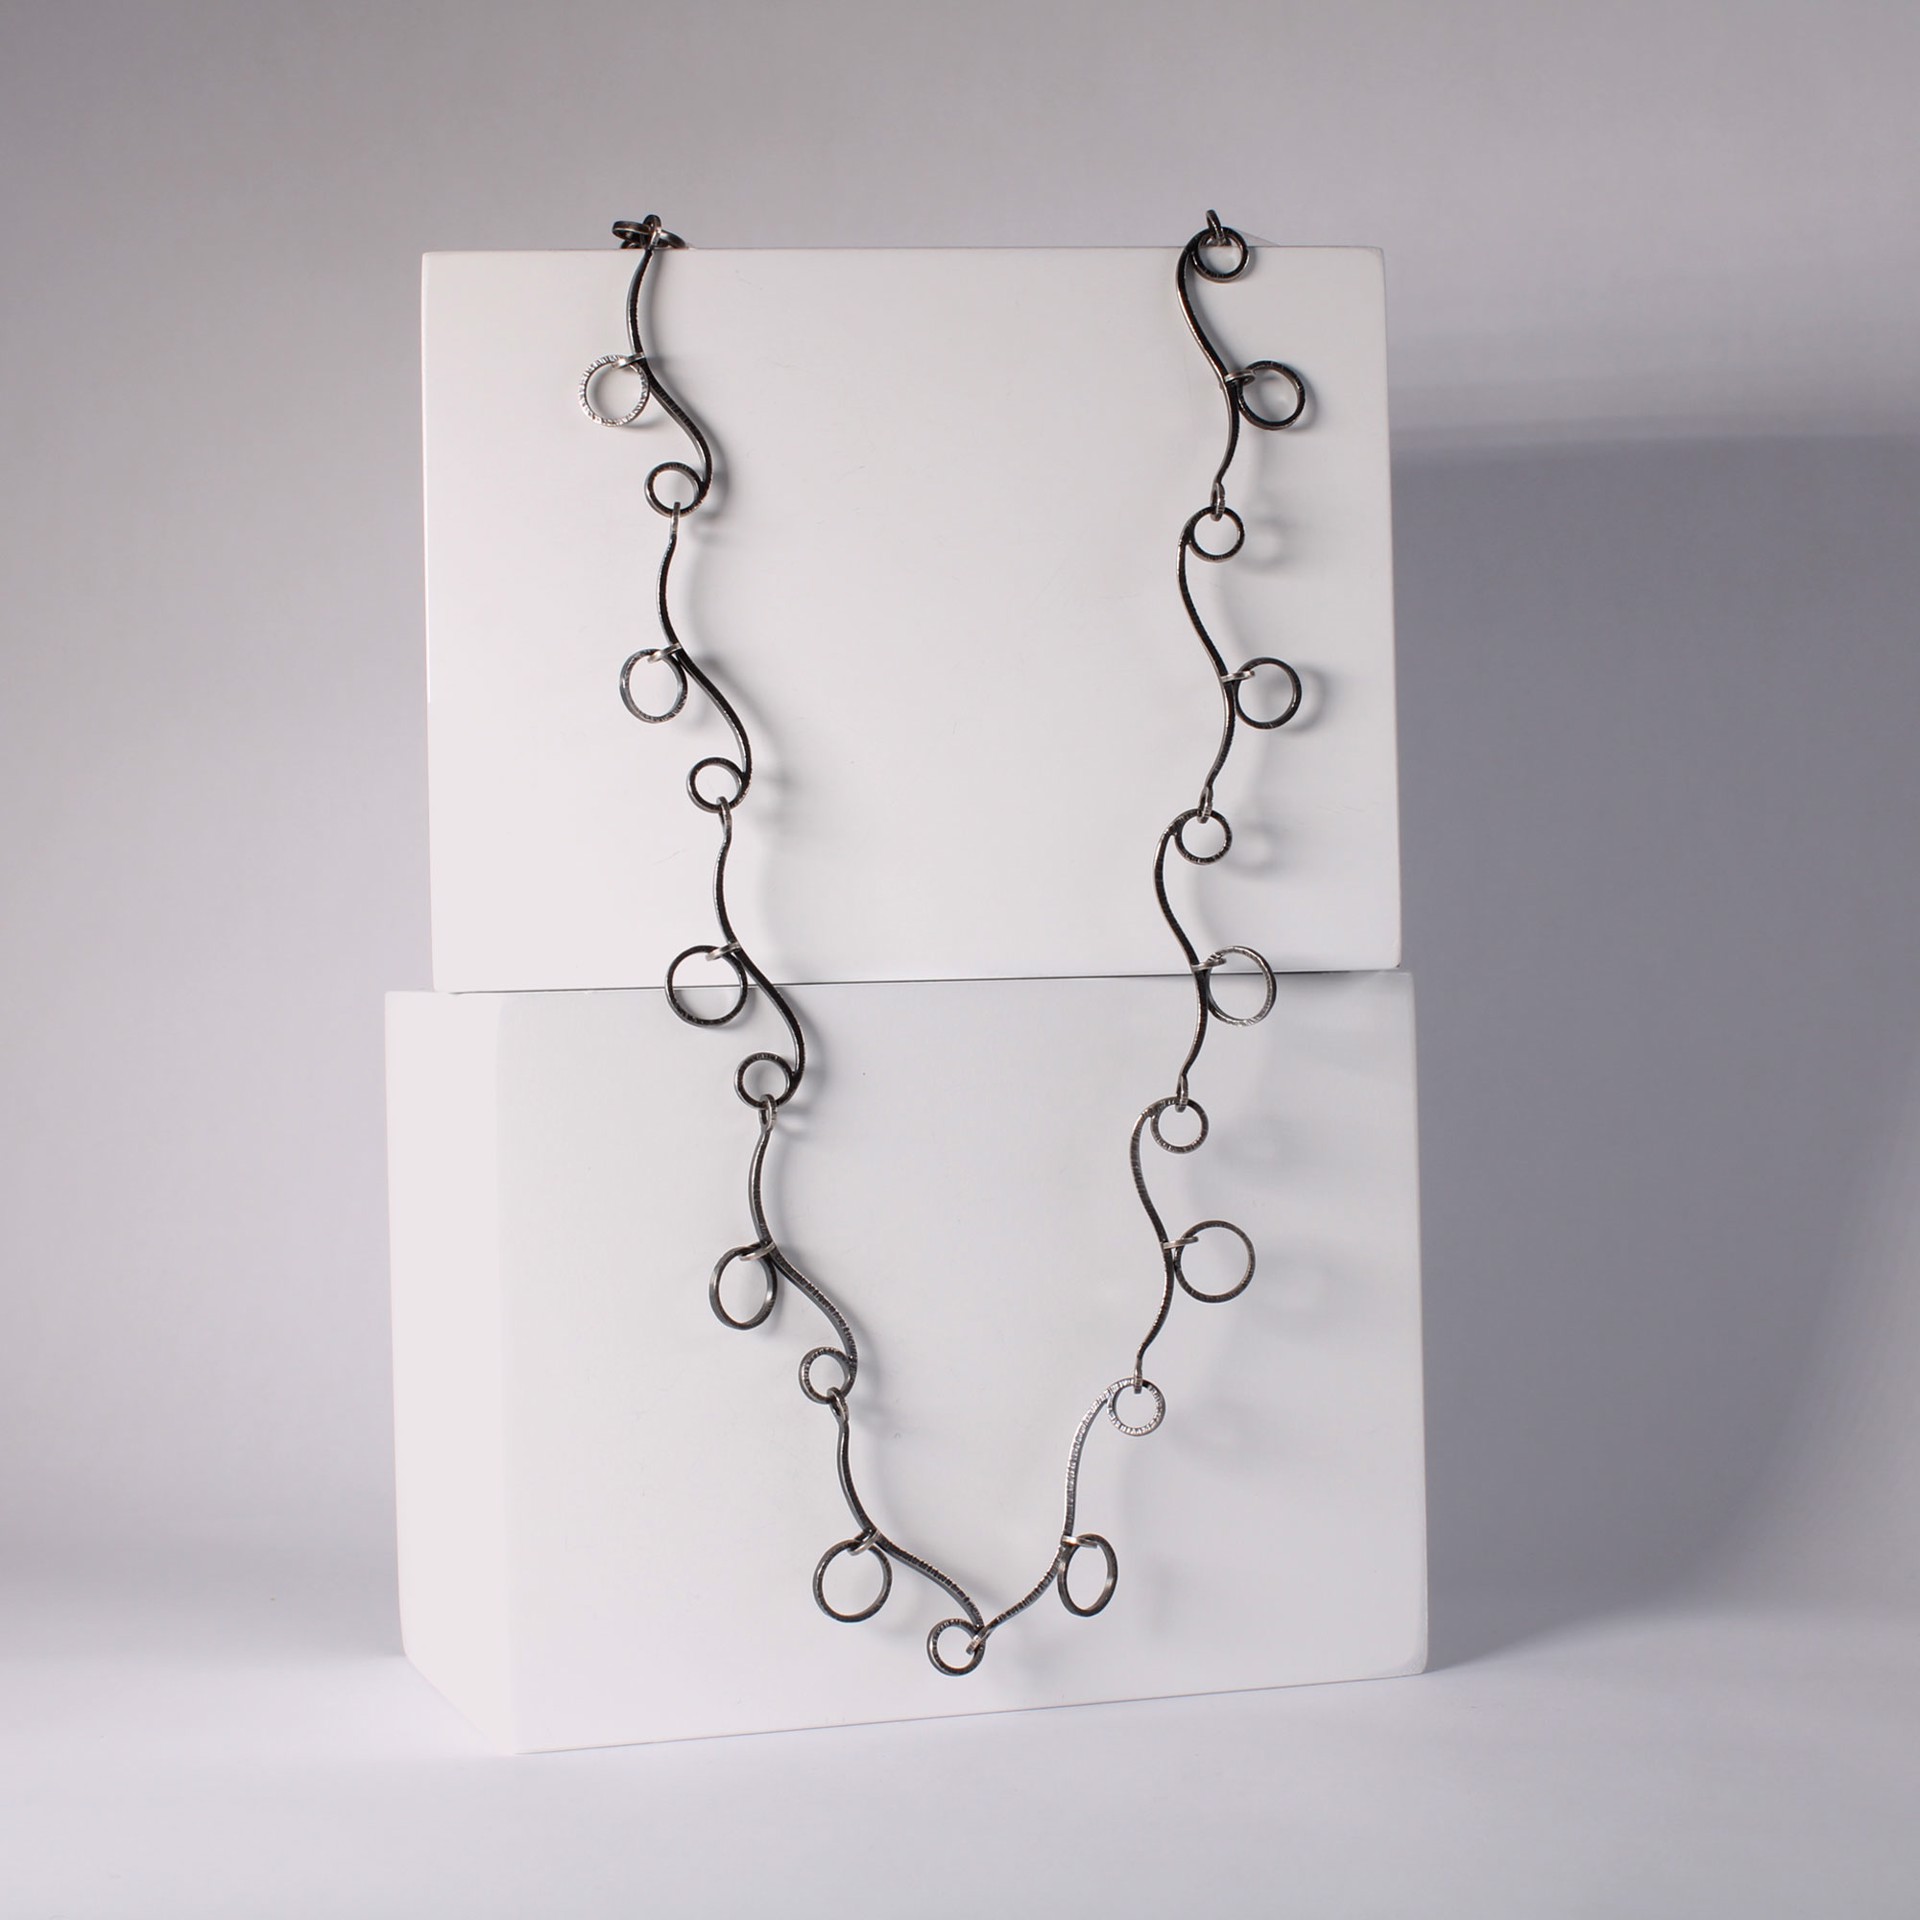 Double Loop Necklace by Barbara Seidenath